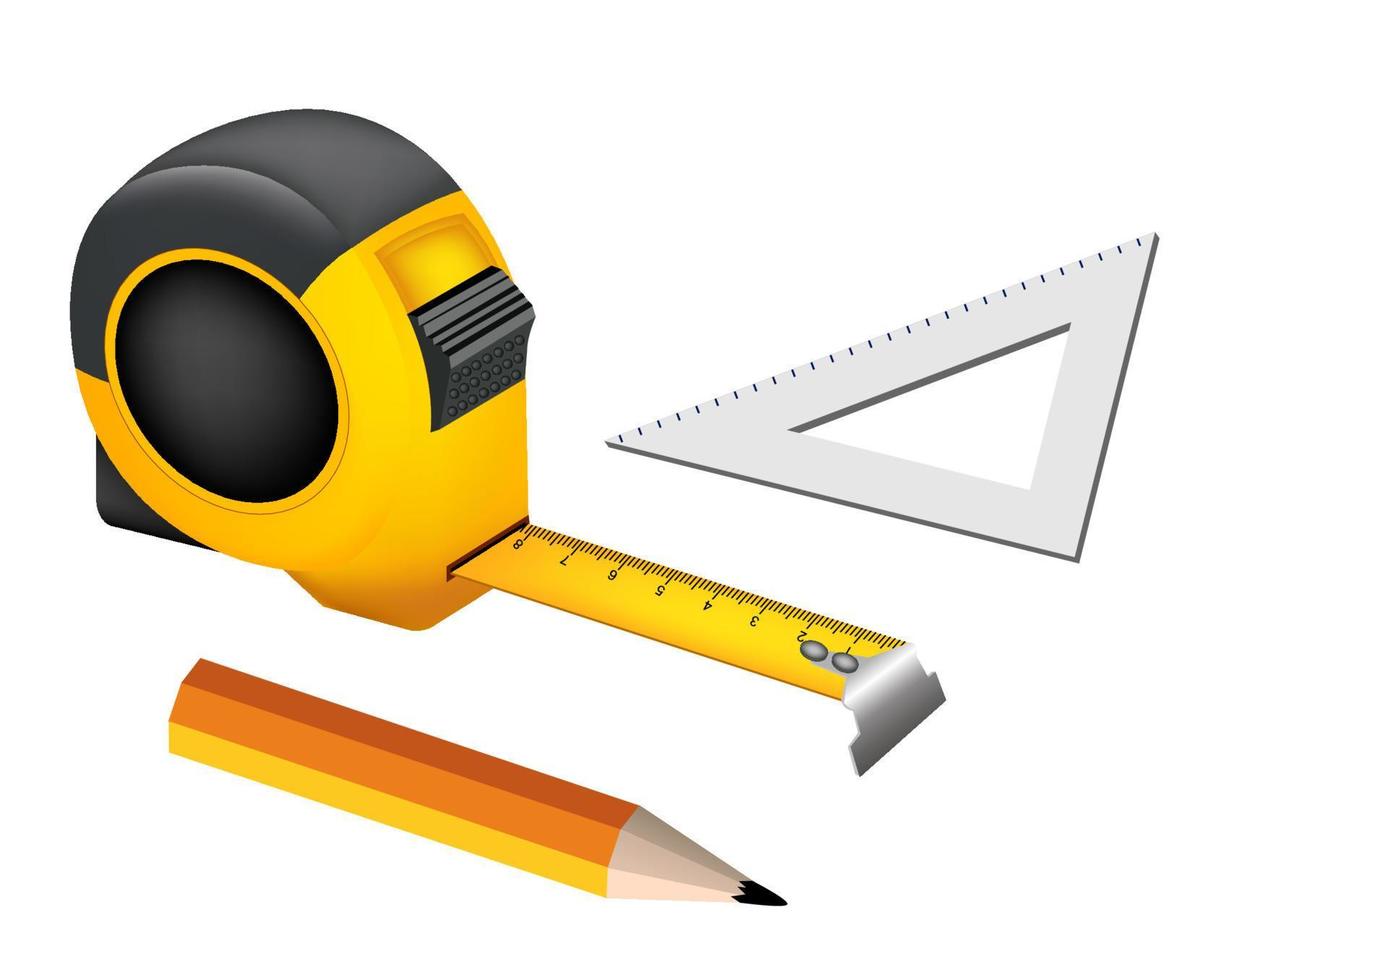 generador de ruleta amarilla con lápiz y regla triangular sobre fondo blanco. vector de ilustración de dibujos animados de estilo plano